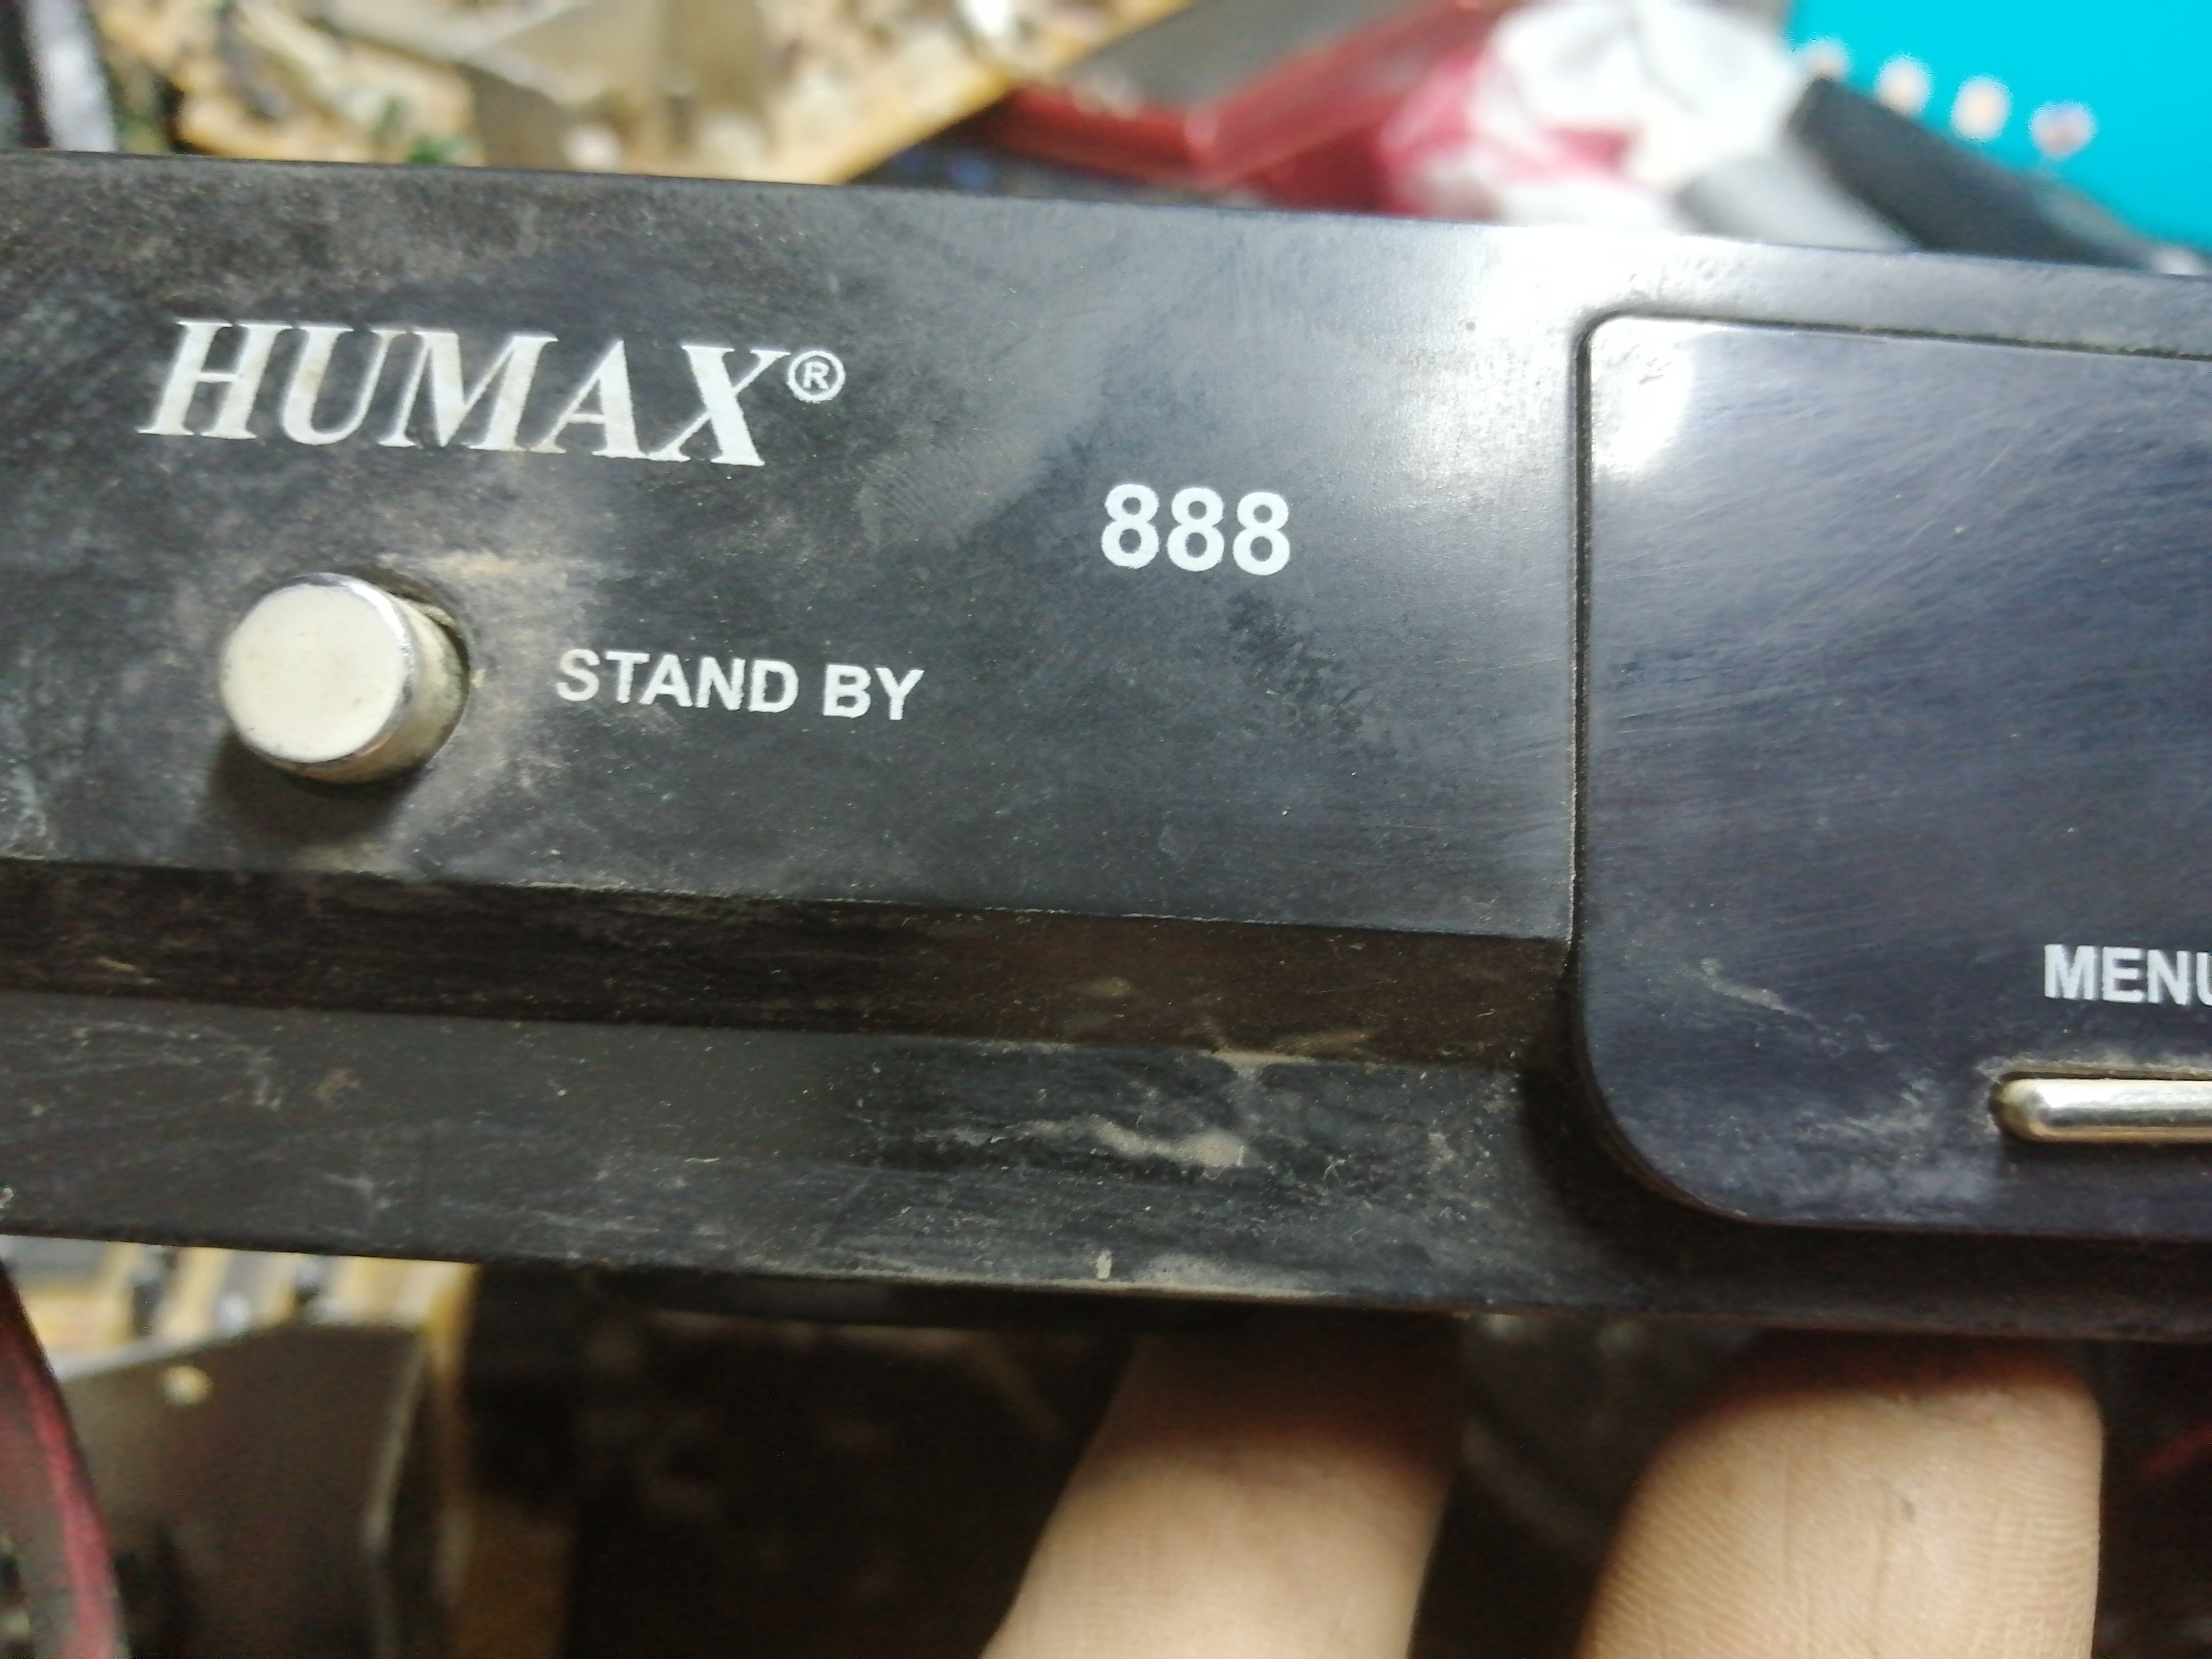 HUMAX 888 dump االصينى معالج Ali 3